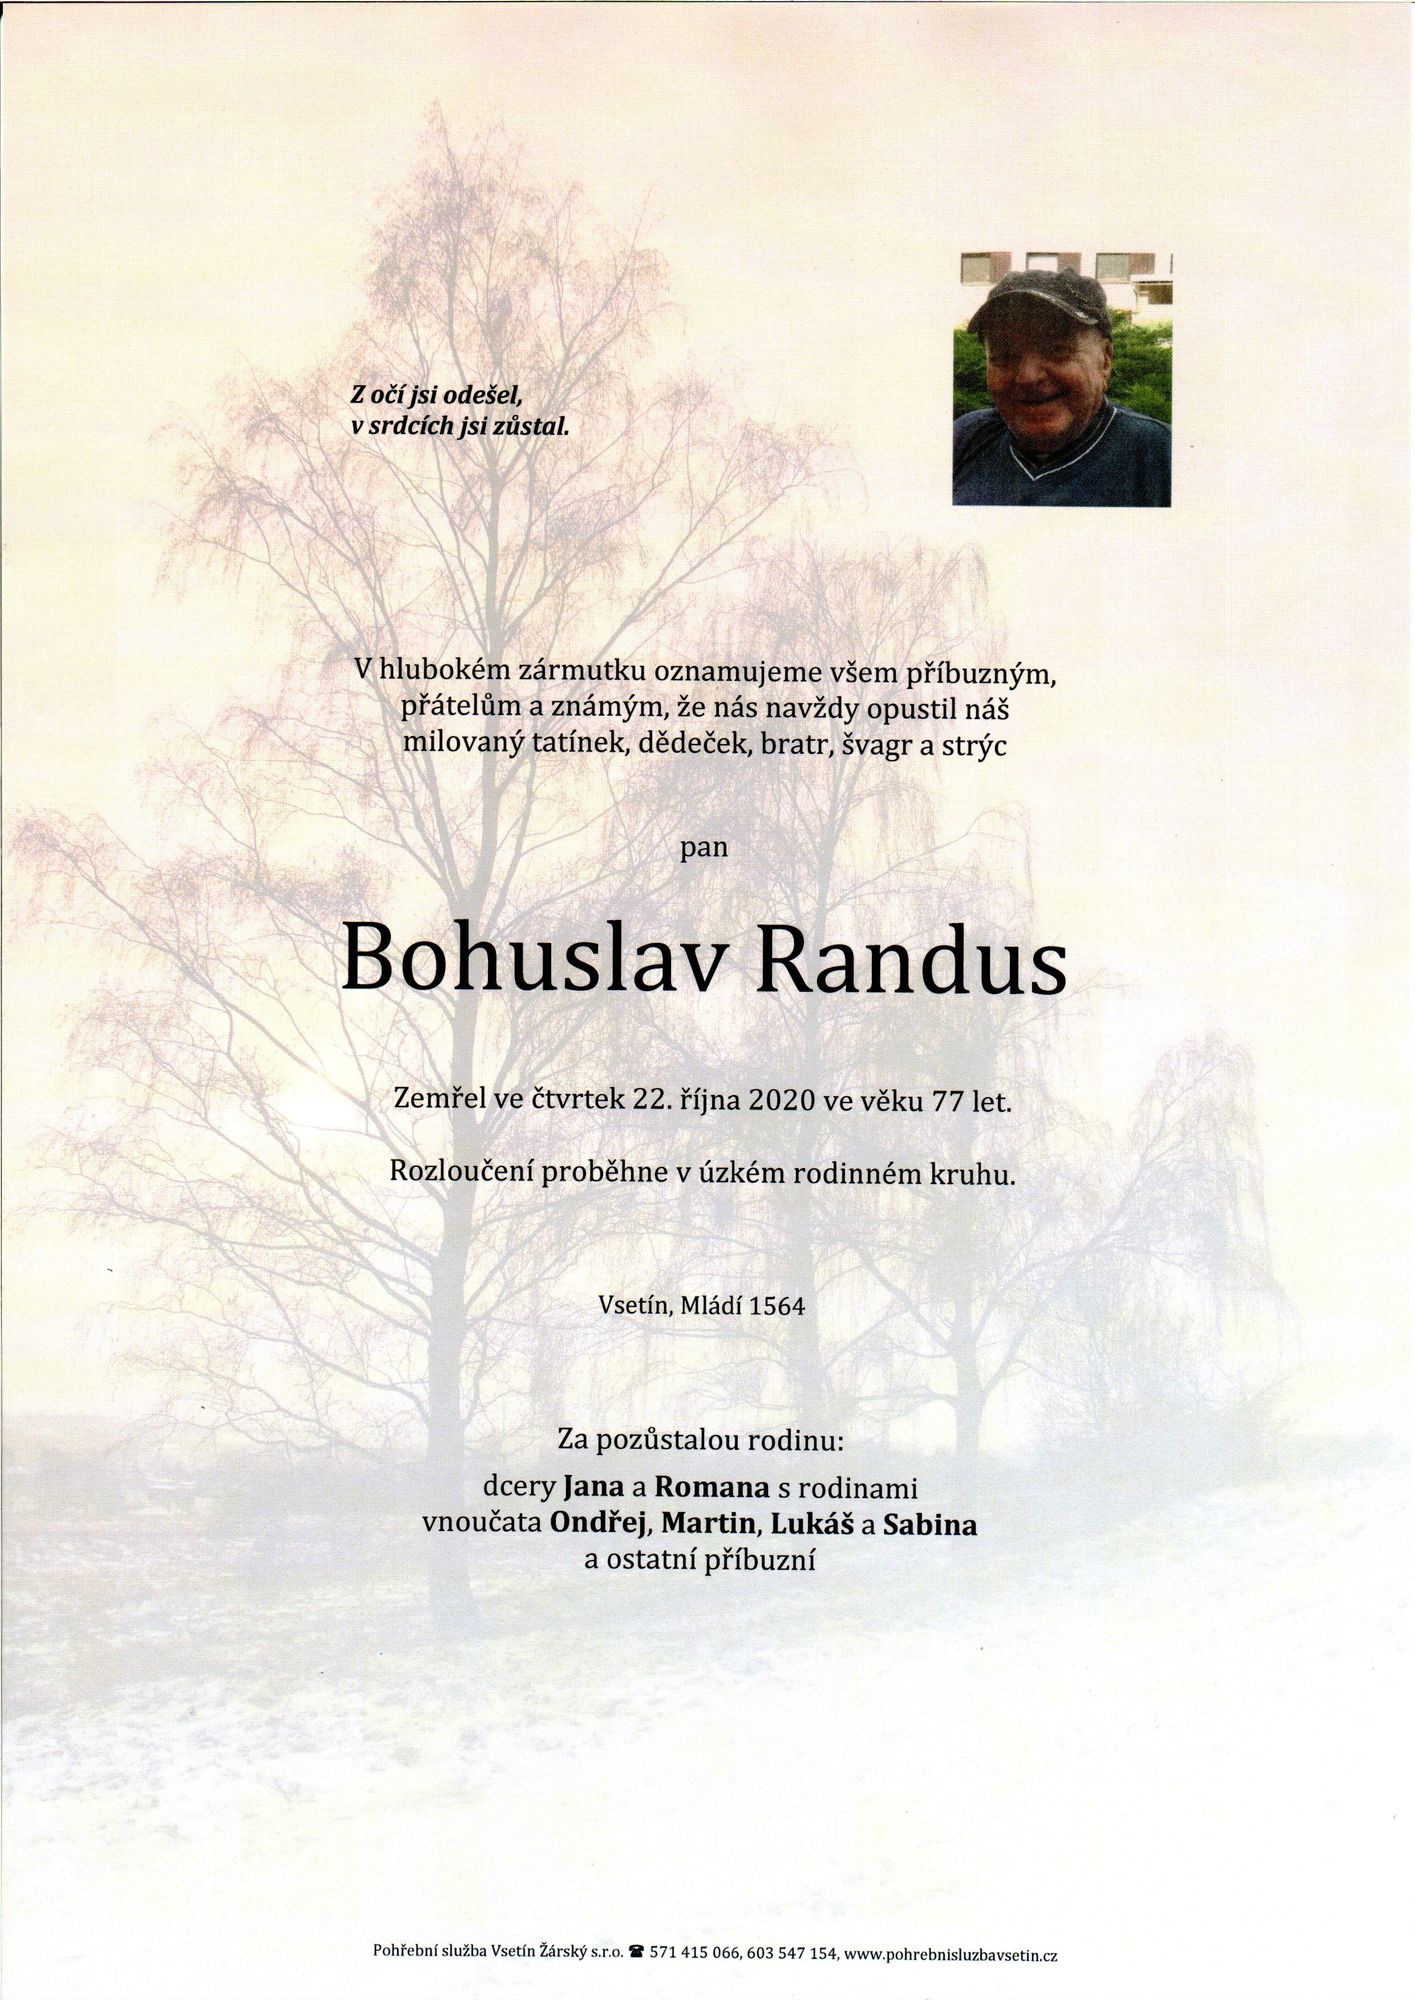 Bohuslav Randus